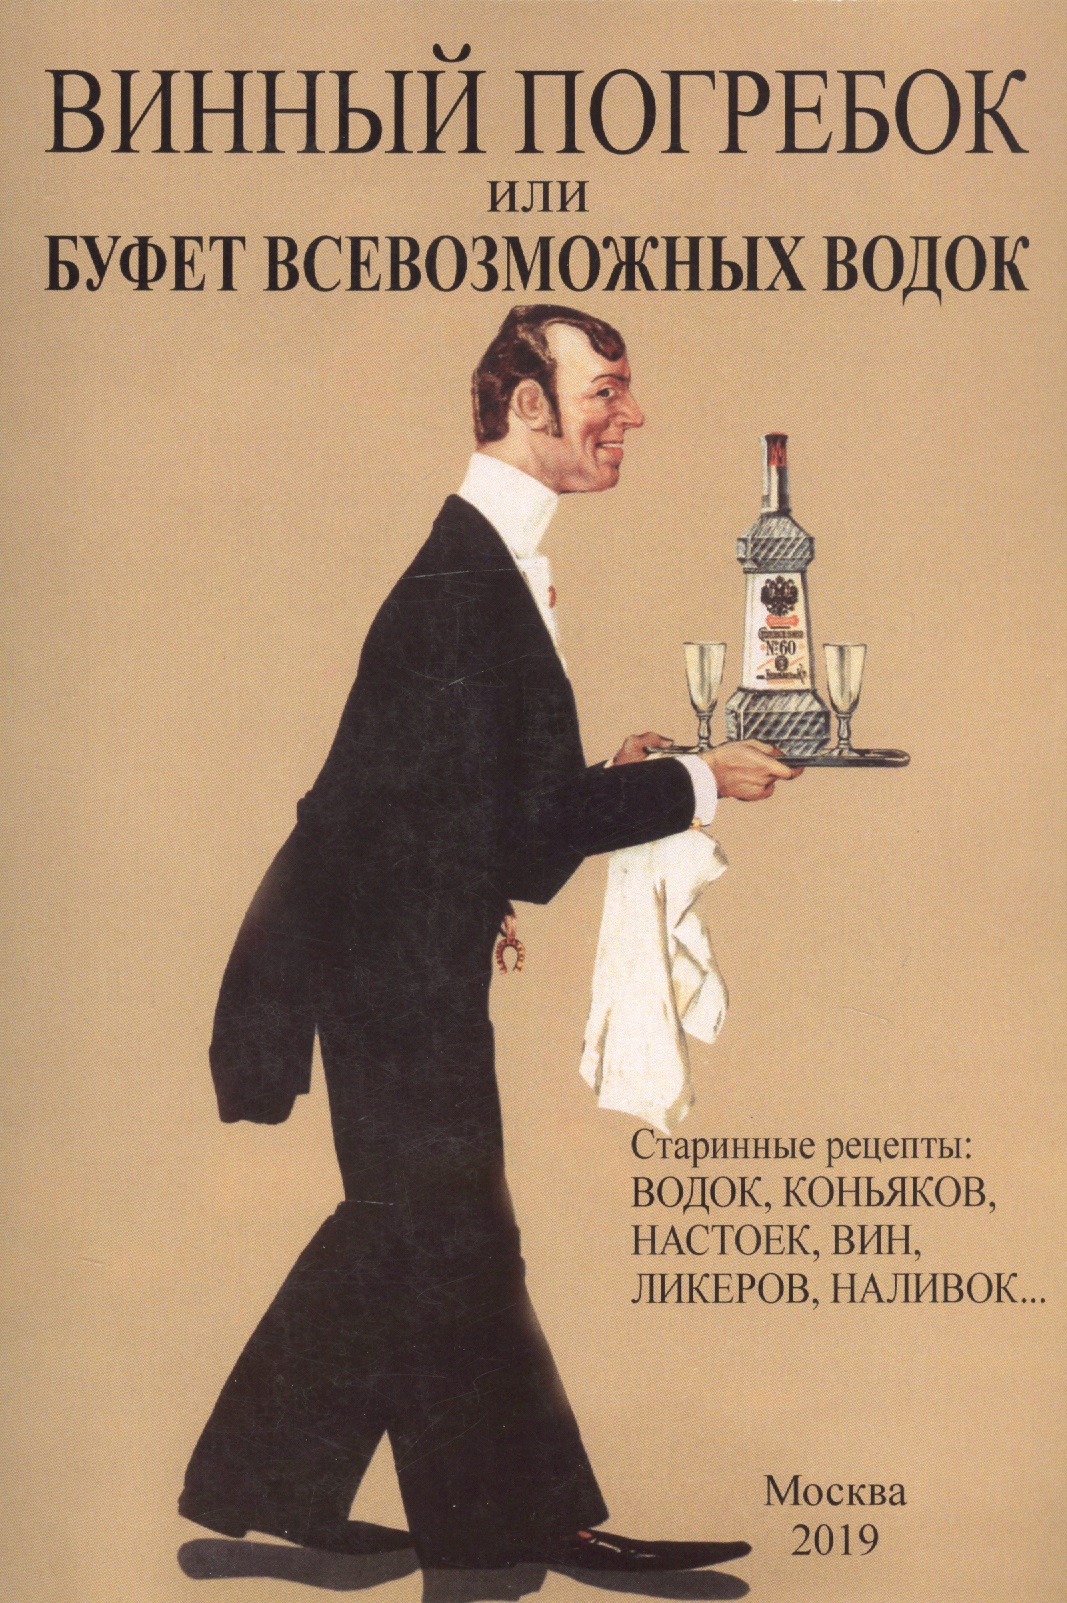 Винный погребок или буфет всевозможных водок.Старинные рецепты: водок, коньяков, настоек, вин, ликеров, наливок…